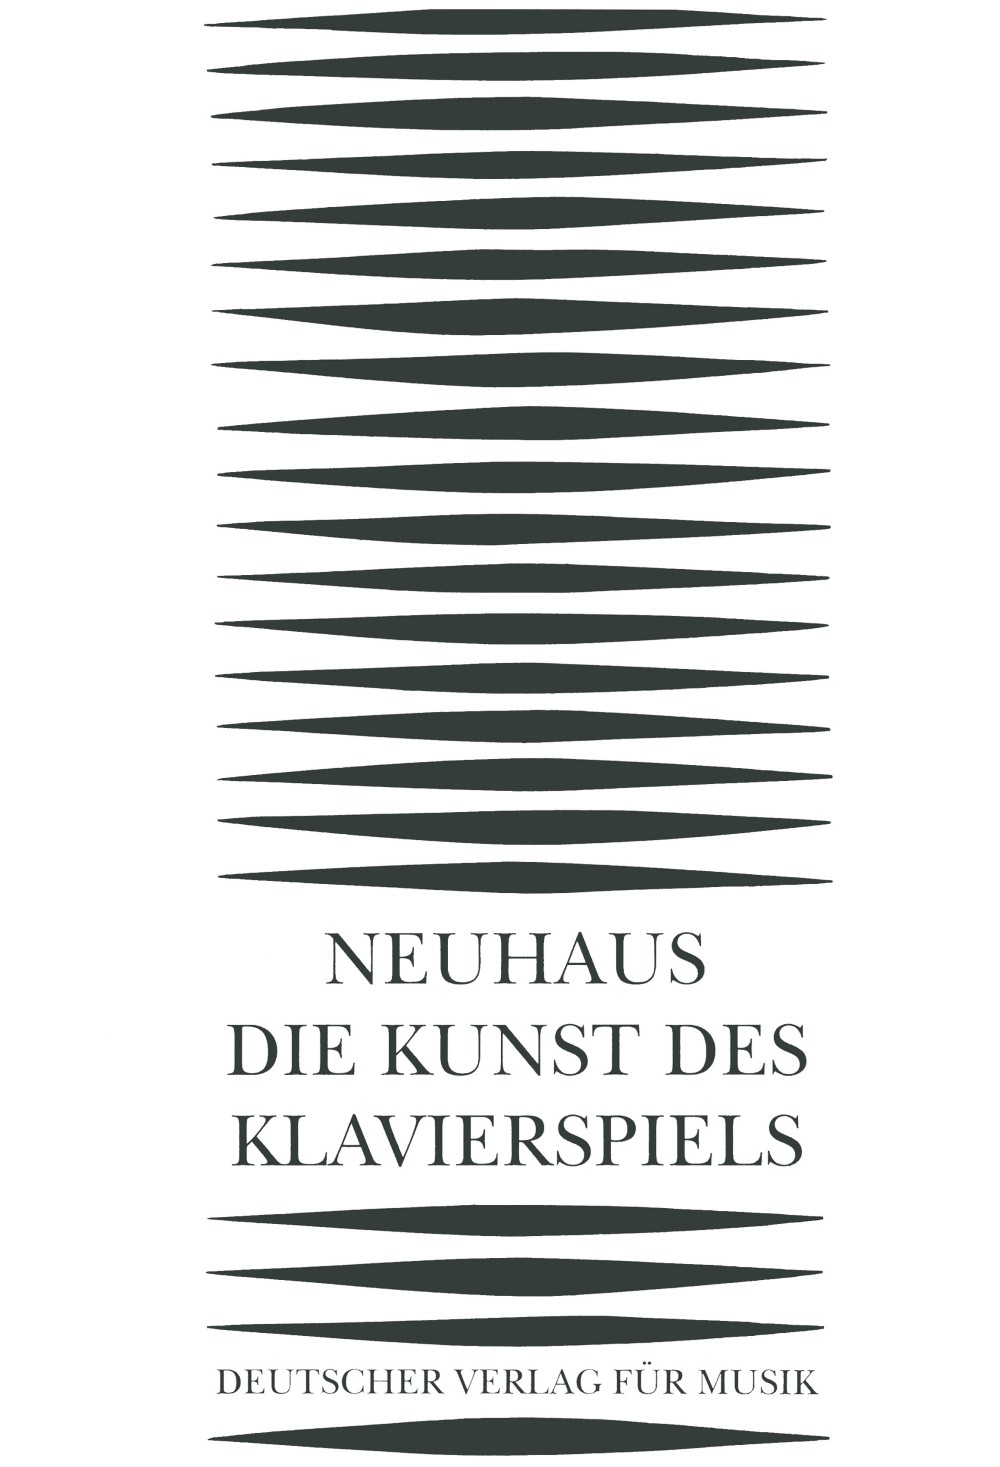 Die Kunst Des Klavierspiels (NEUHAUS HEINRICH)